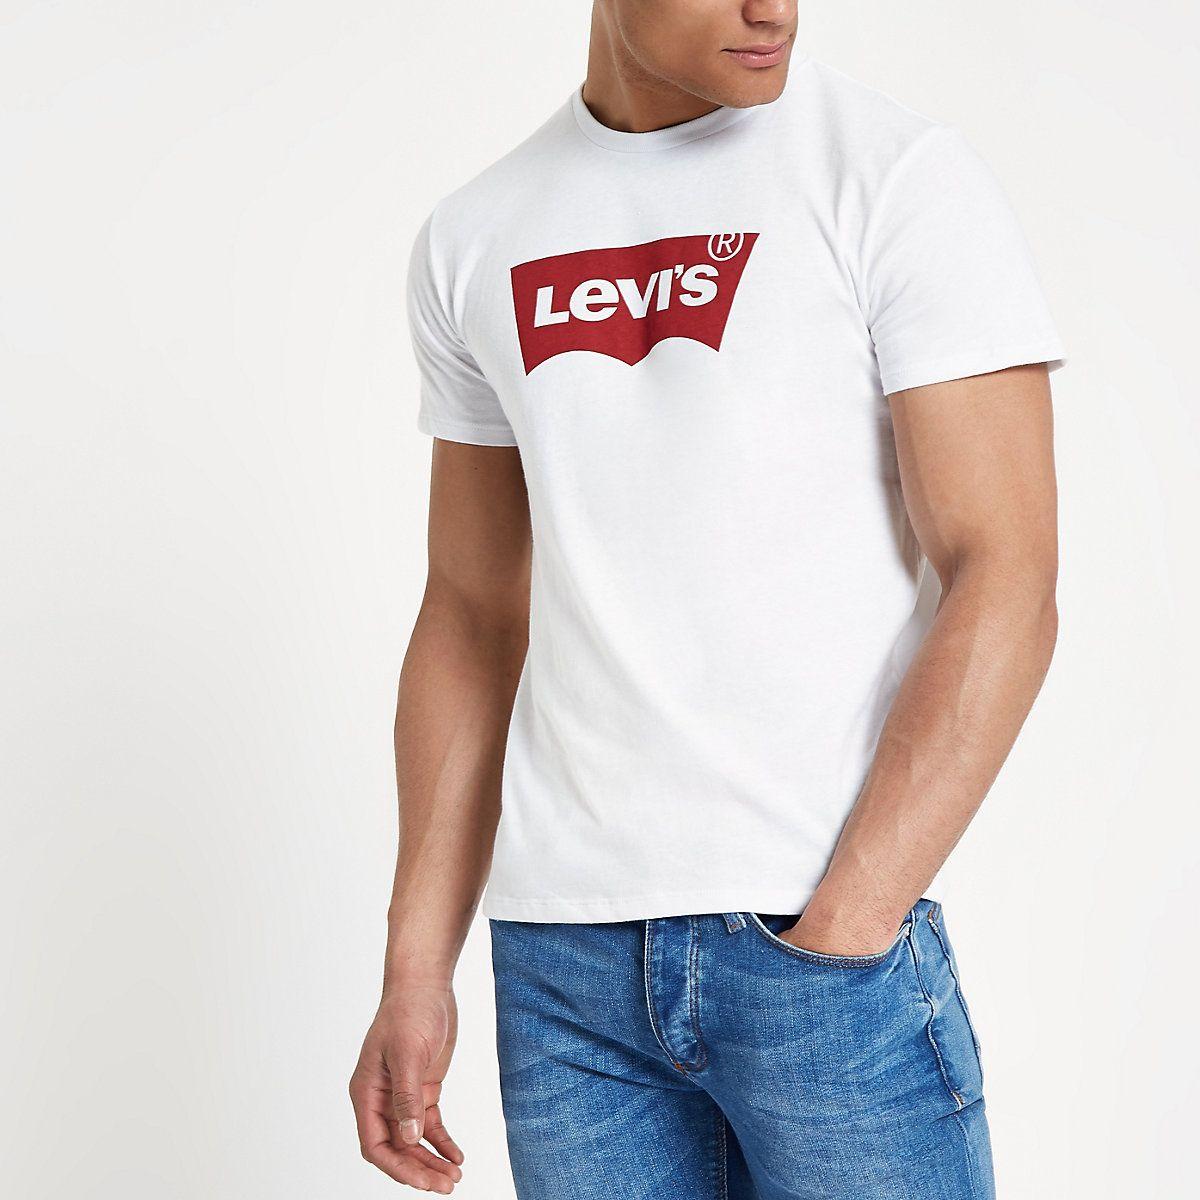 Denim and White Logo - Levi's White Logo Print Crew Neck T Shirt Shirts Shirts